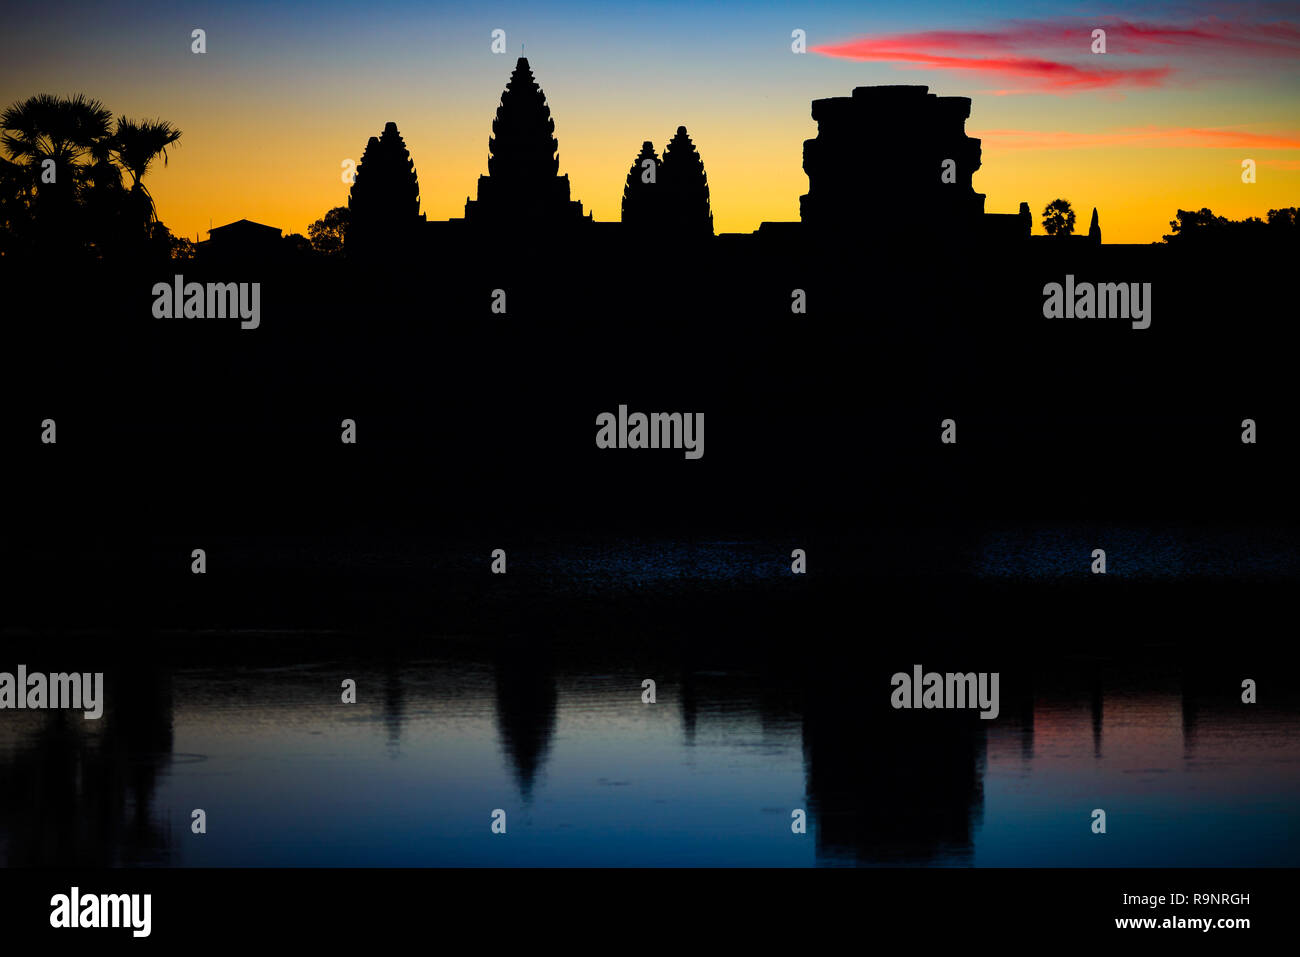 Angkor Wat dramatischer Himmel in der Morgendämmerung Hauptfassade silhouette Reflexion über Wasser Teich. Weltberühmte Tempel in Kambodscha. Stockfoto